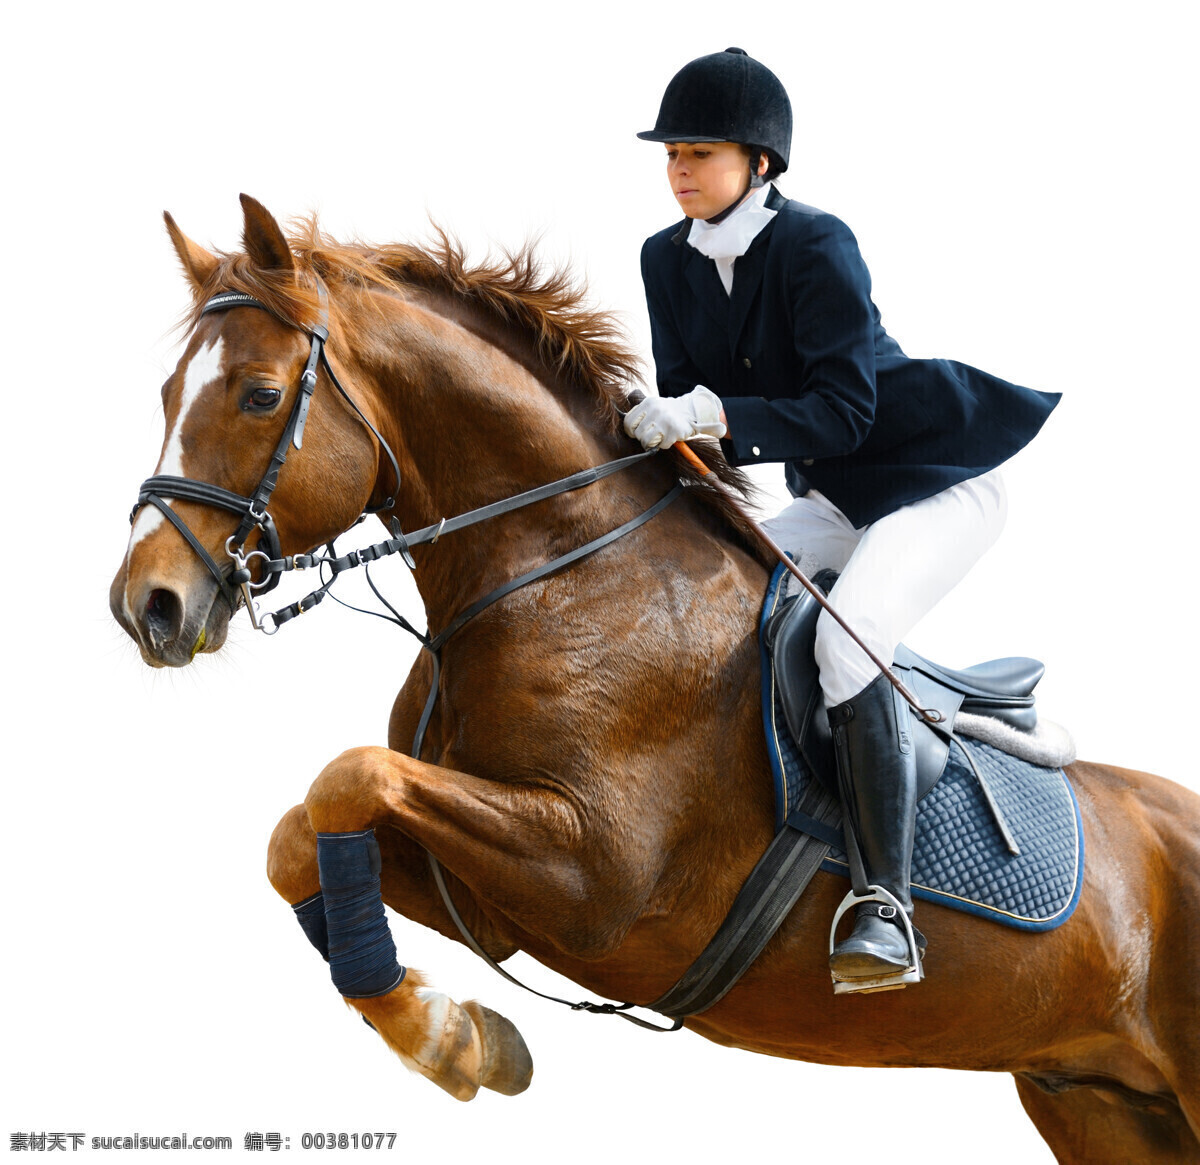 马术 运动员 马术运动员 女子运动员 骑马的美女 骏马 马匹 陆地动物 生物世界